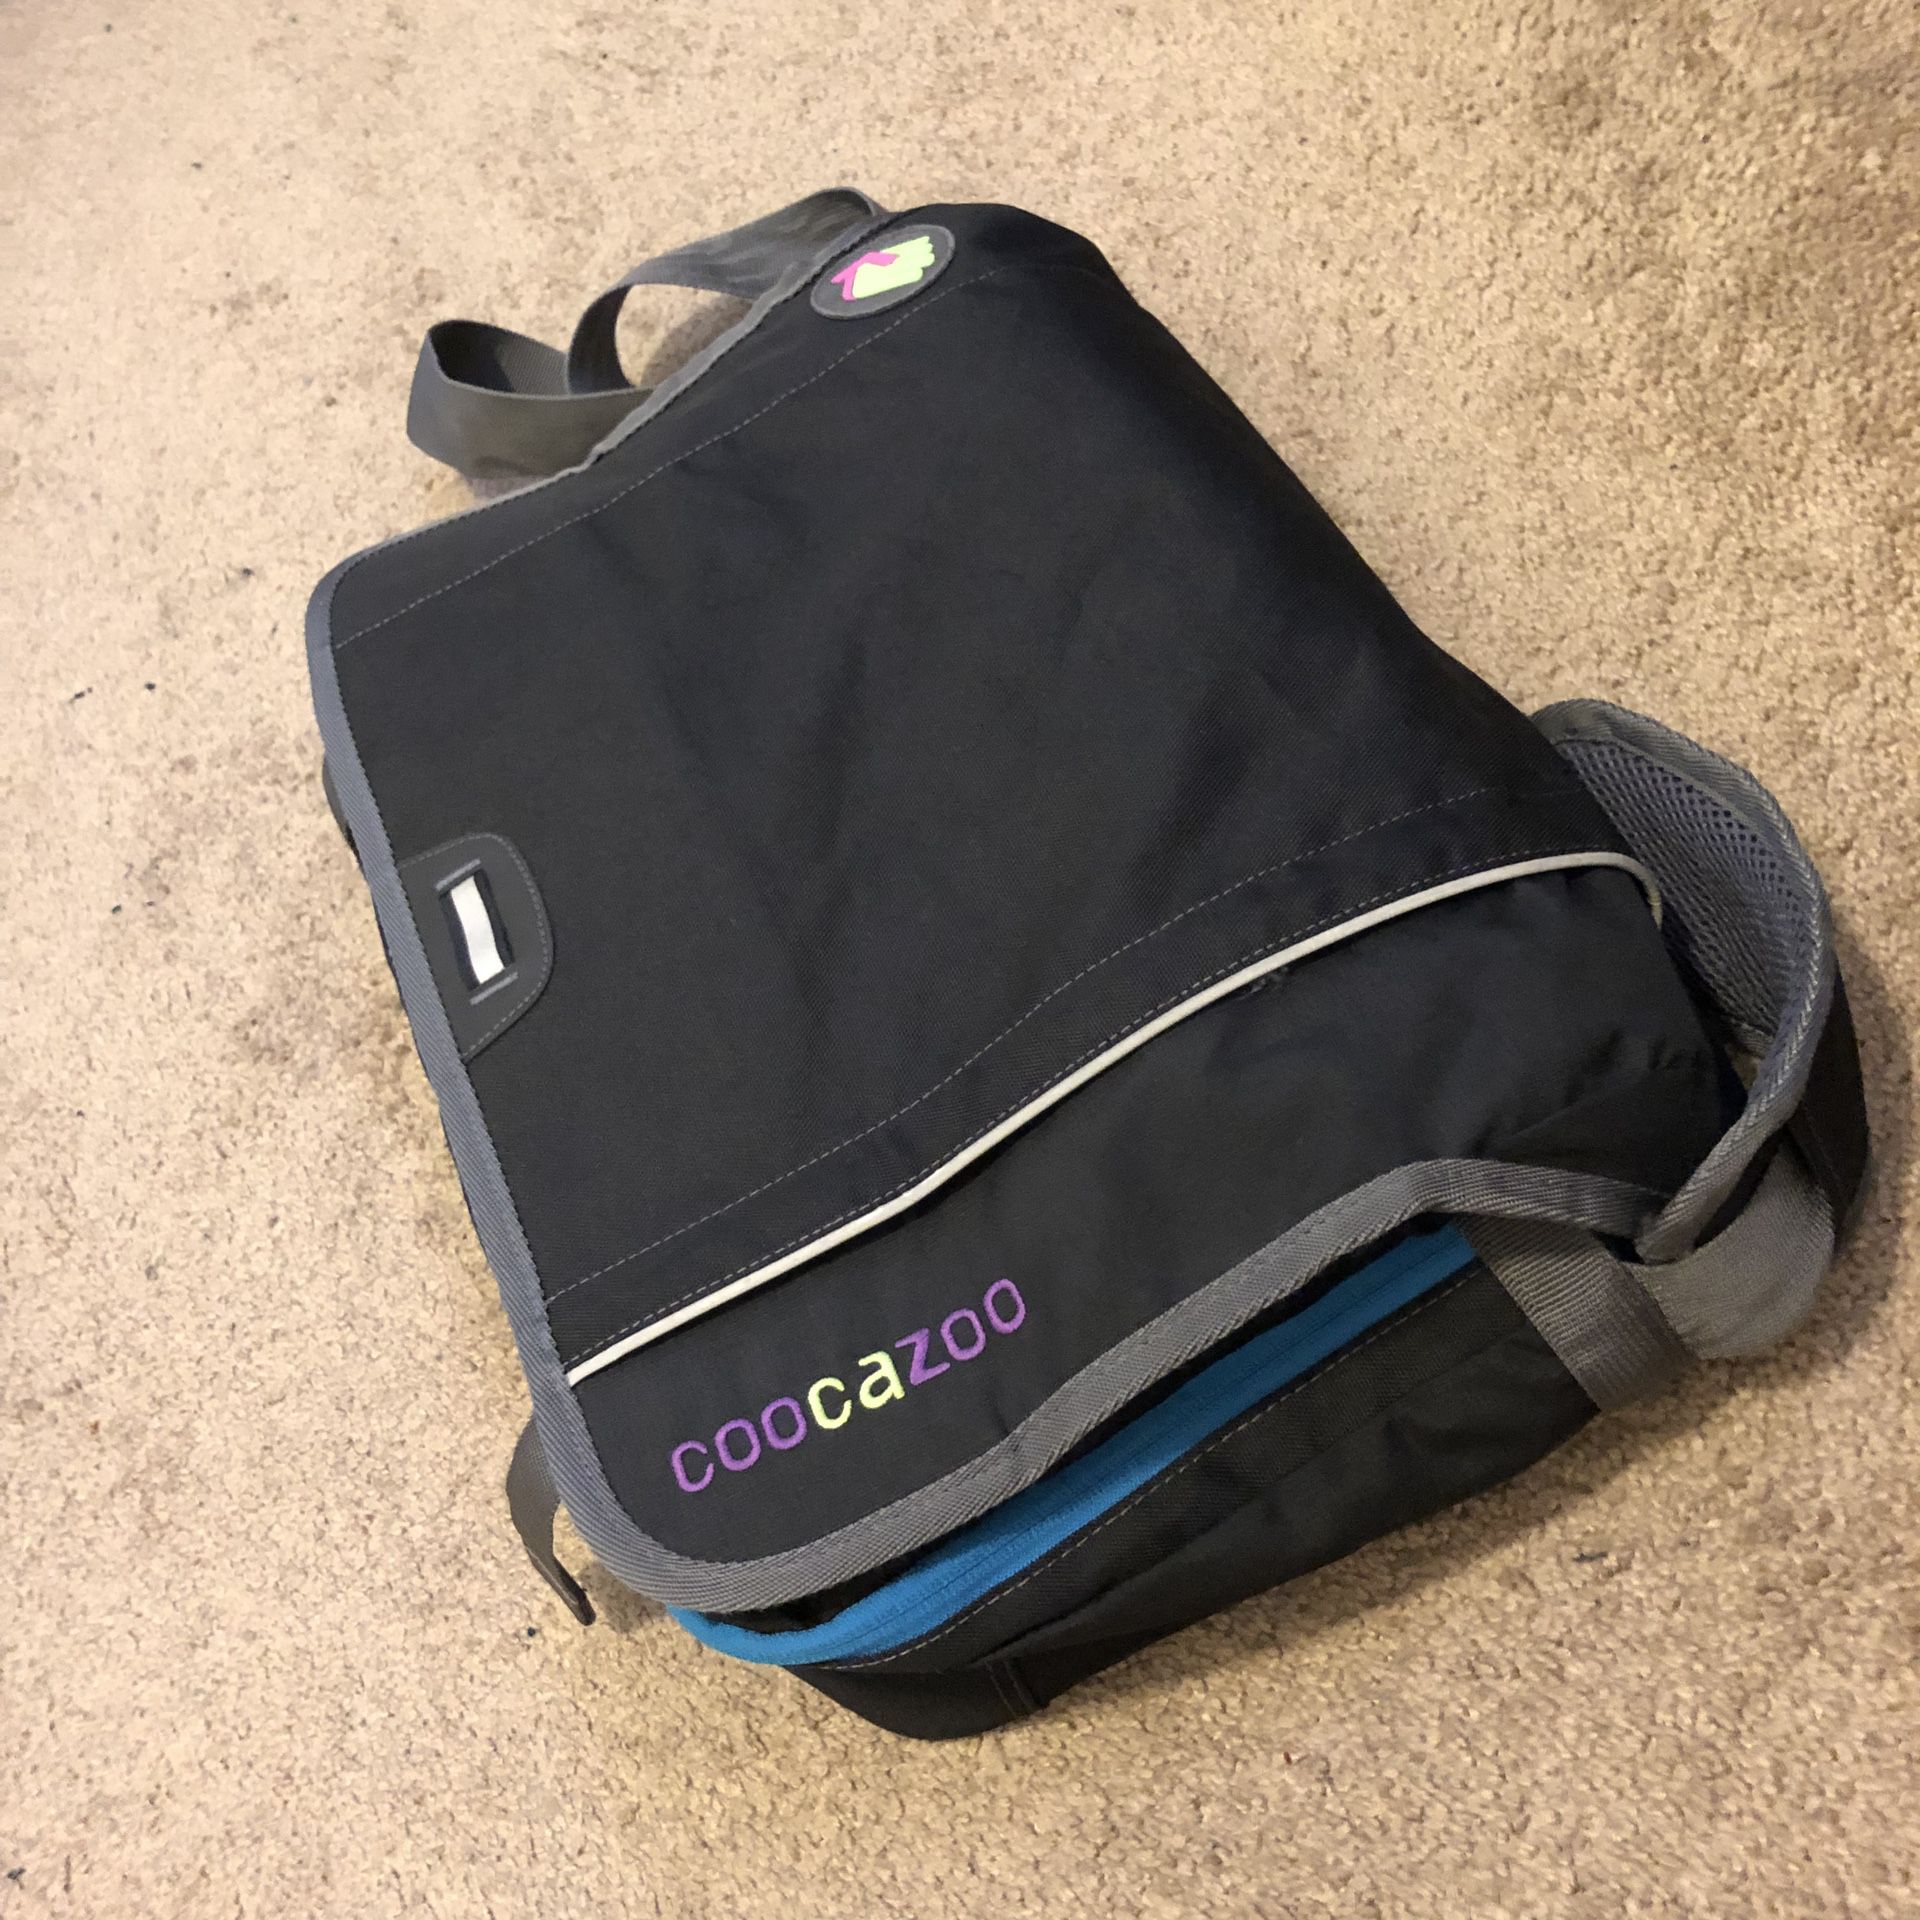 Coocazoo messenger bag